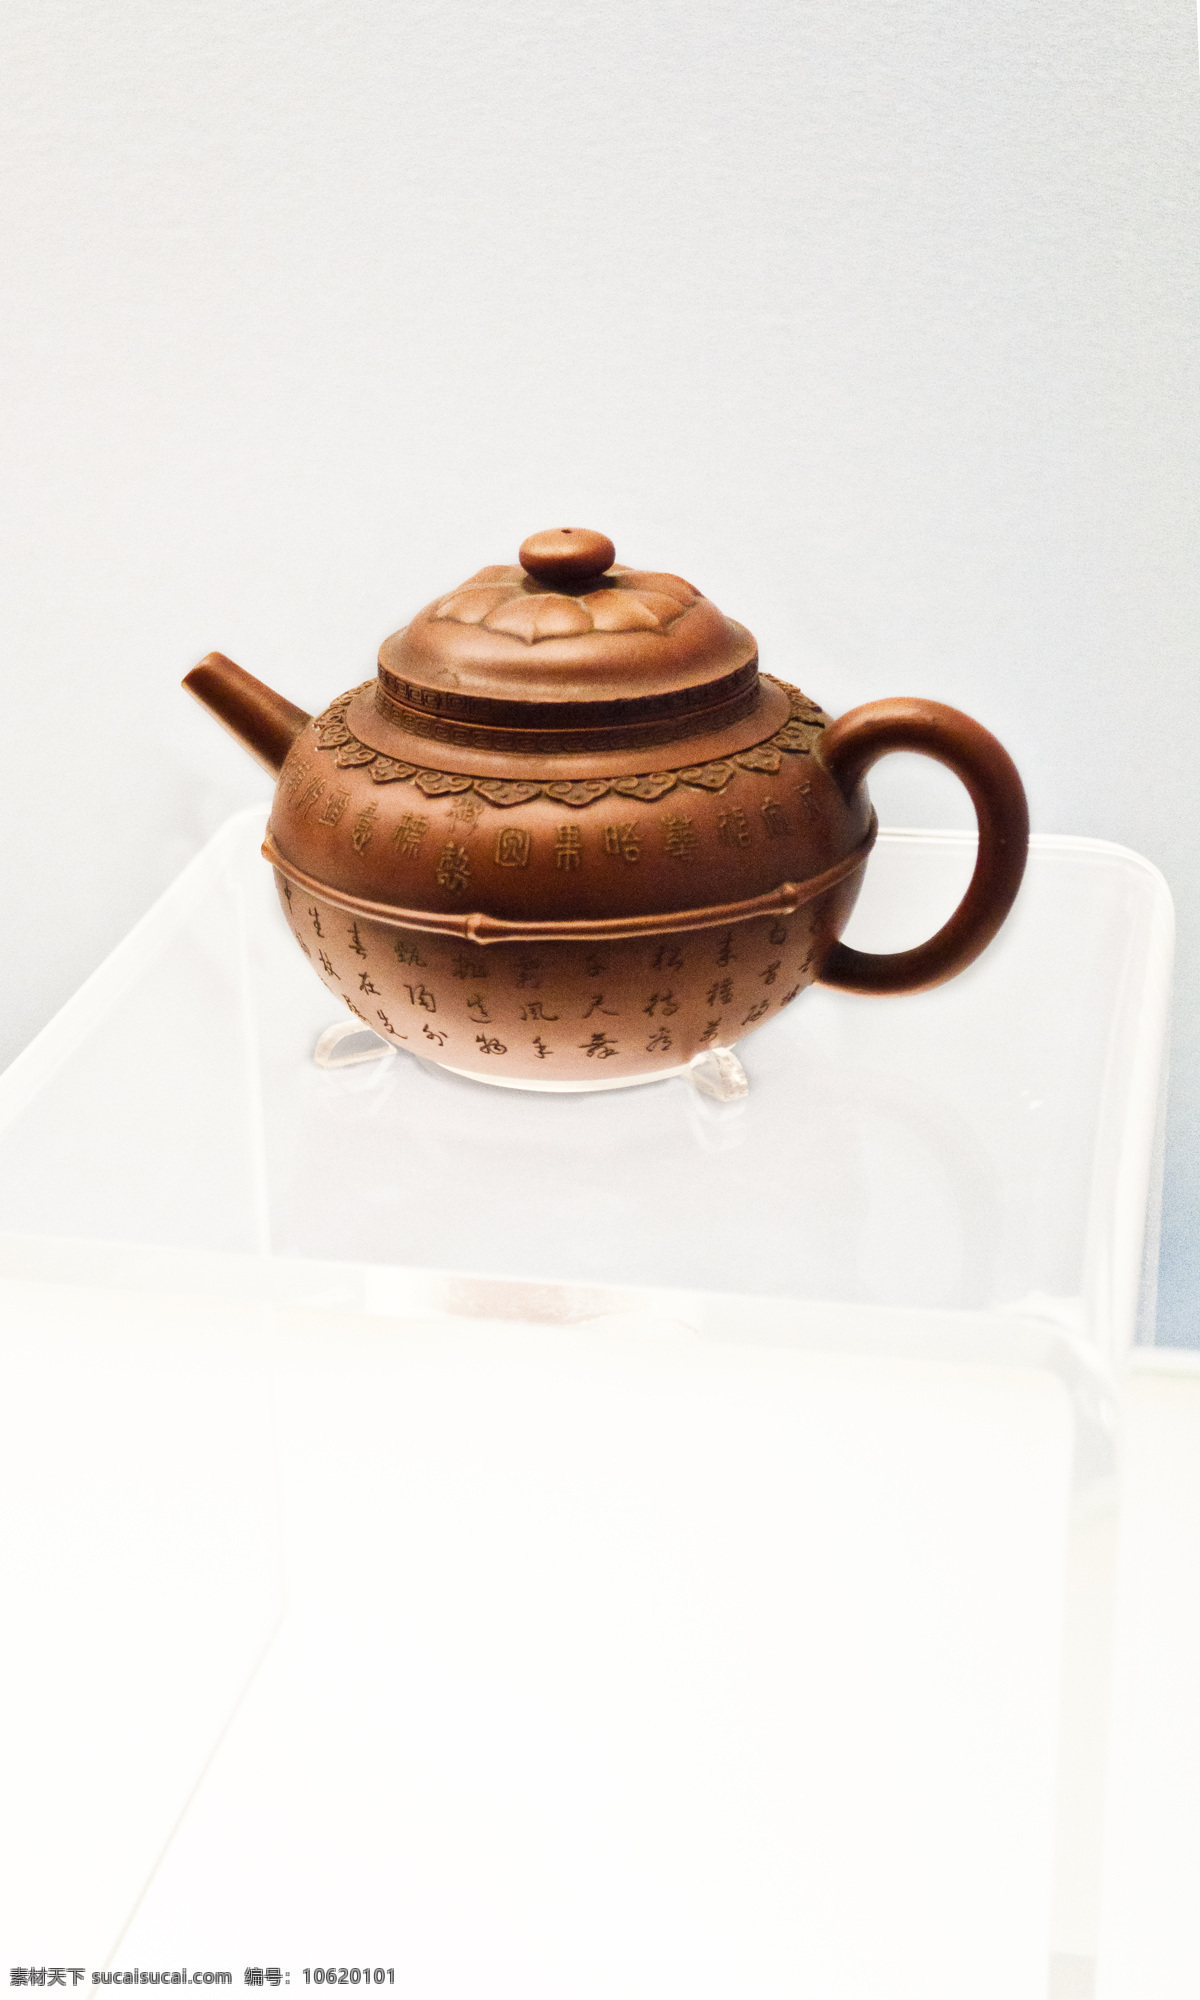 紫砂壶 水壶 茶壶 刻字 展示 古代文化 博物馆 藏品 上海文化 上海博物馆 传统文化 文化艺术